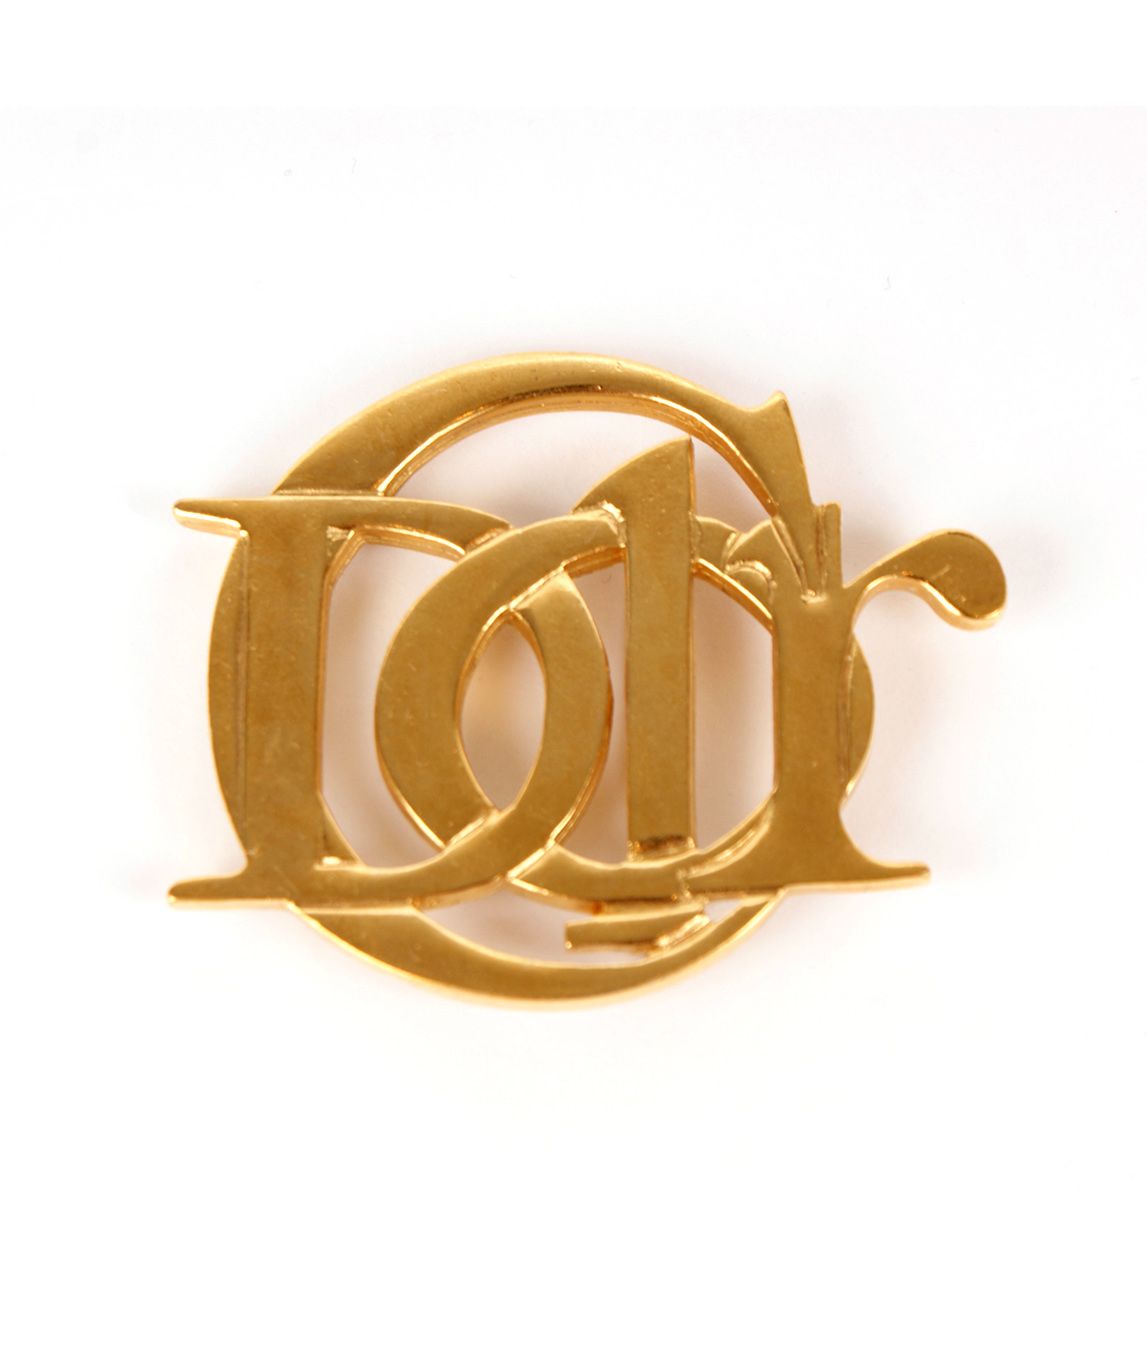 Dây chuyền Christian Dior logo tròn màu vàng kim loại  Én shop hàng hiệu